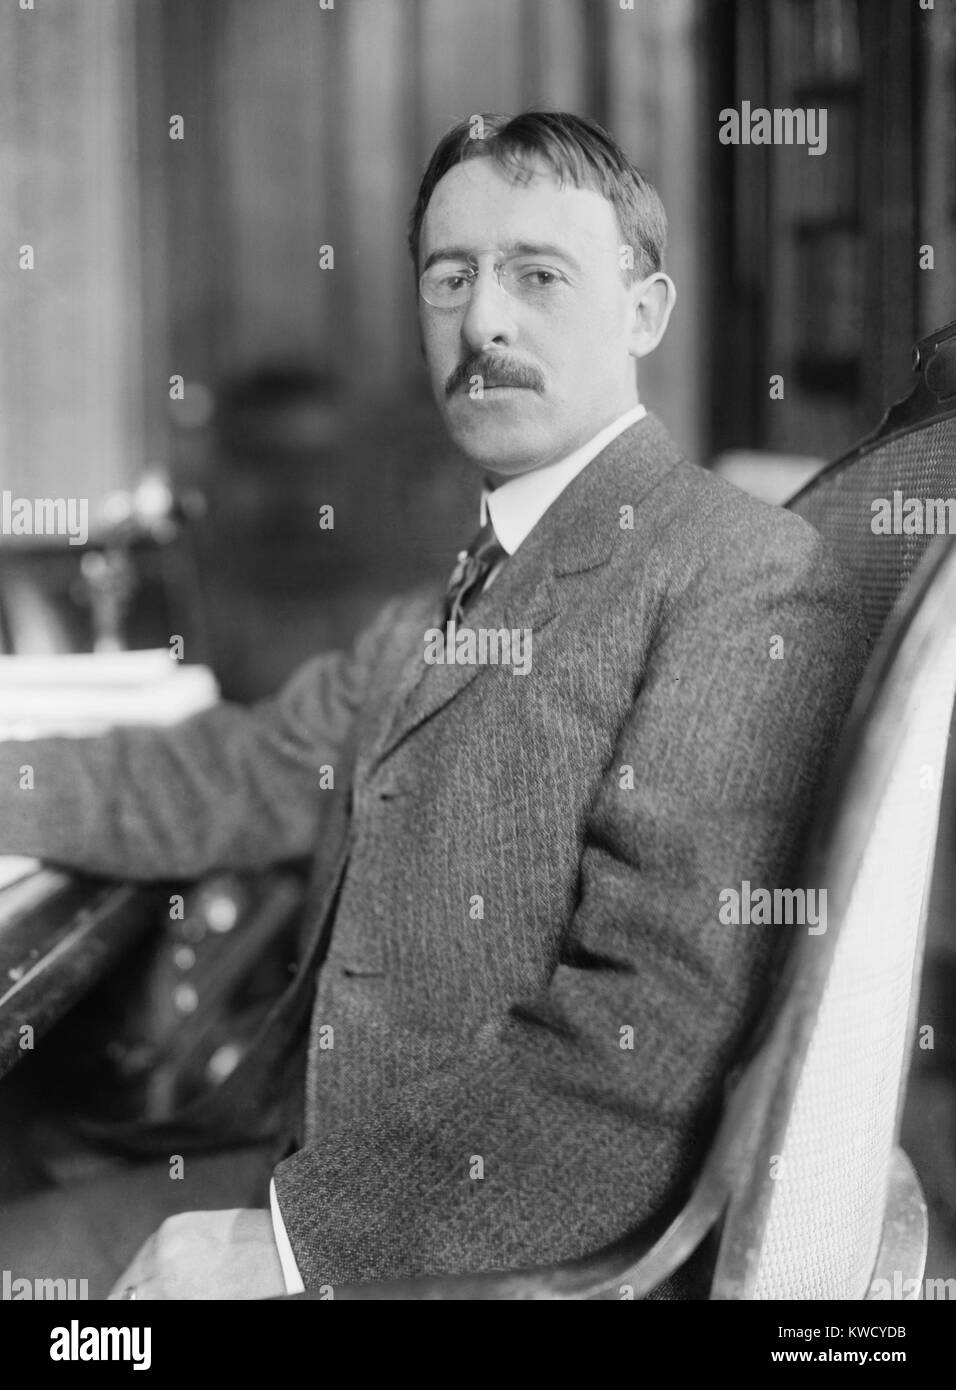 Henry L. Stimson comme secrétaire à la guerre pour William Howard Taft, 1911-1913. Plus tard, il a été Sec. d'État à l'Hebert Hoover (1929-1933) et Sec. de la guerre de RAD durant la Seconde Guerre mondiale (BSLOC 2017 2 118) Banque D'Images